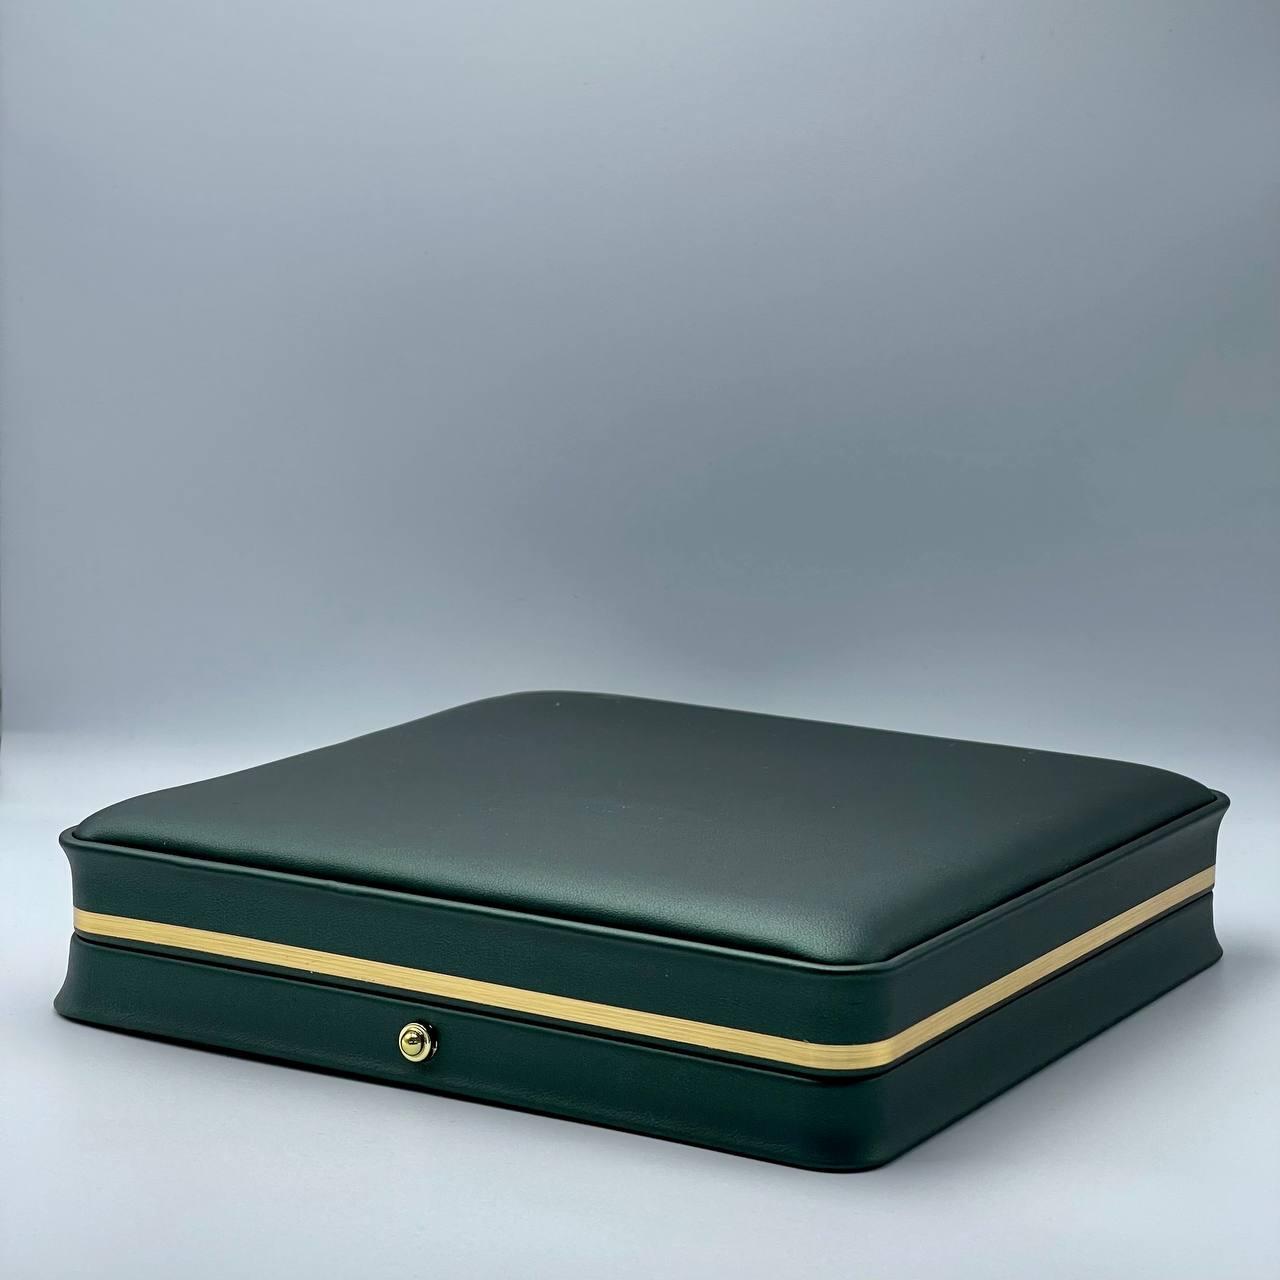 Ювелирная коробочка зеленая для колье 19375-130